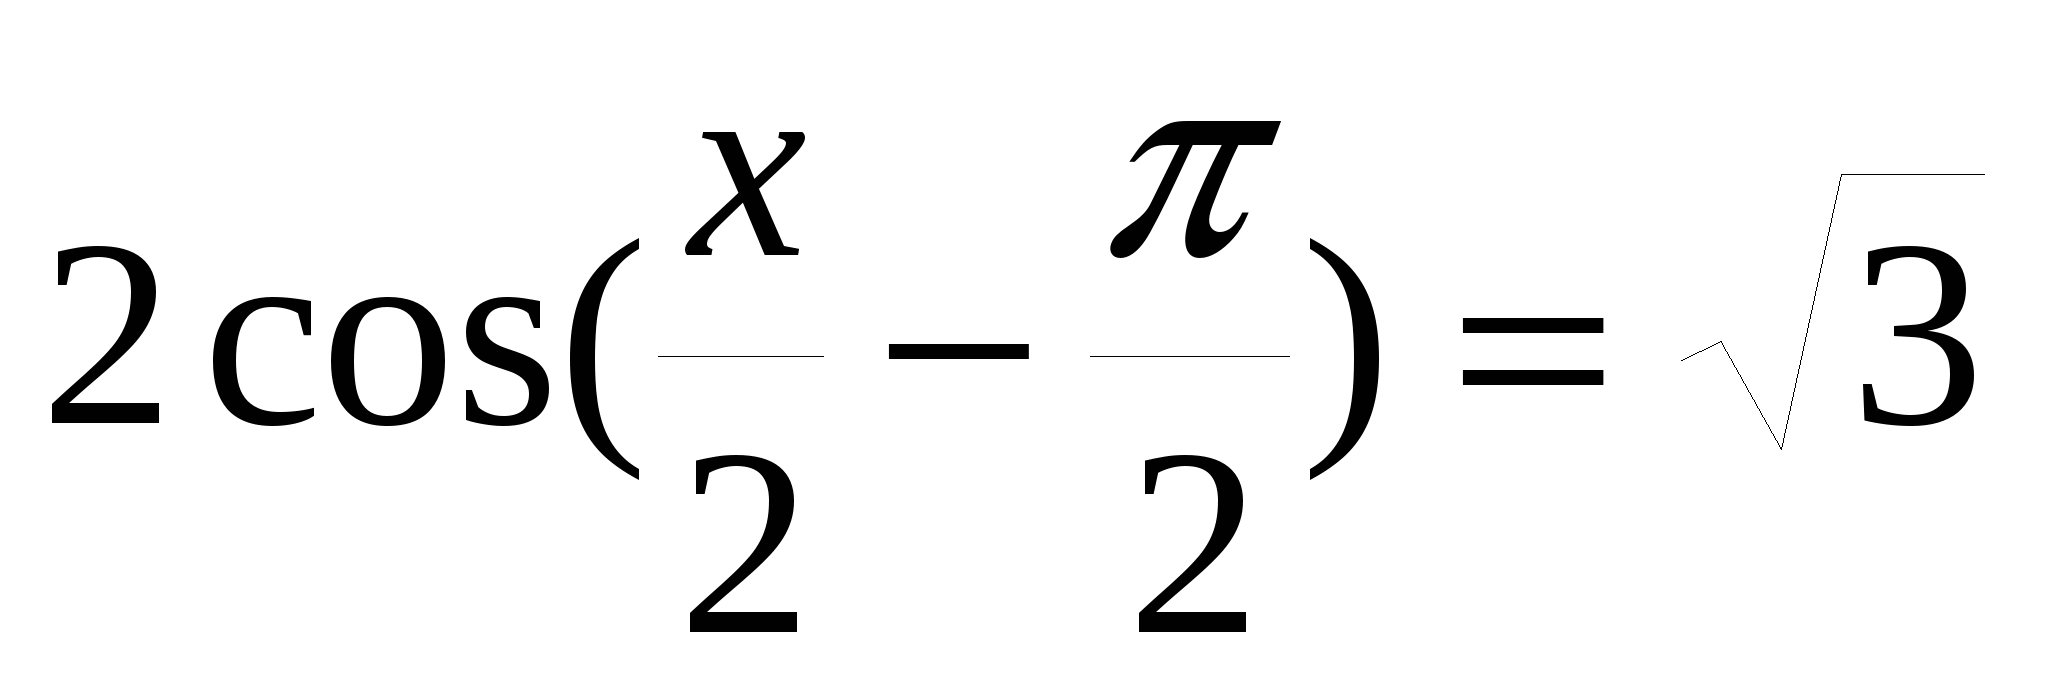 Разработка урока Тригонометрическое уравнение